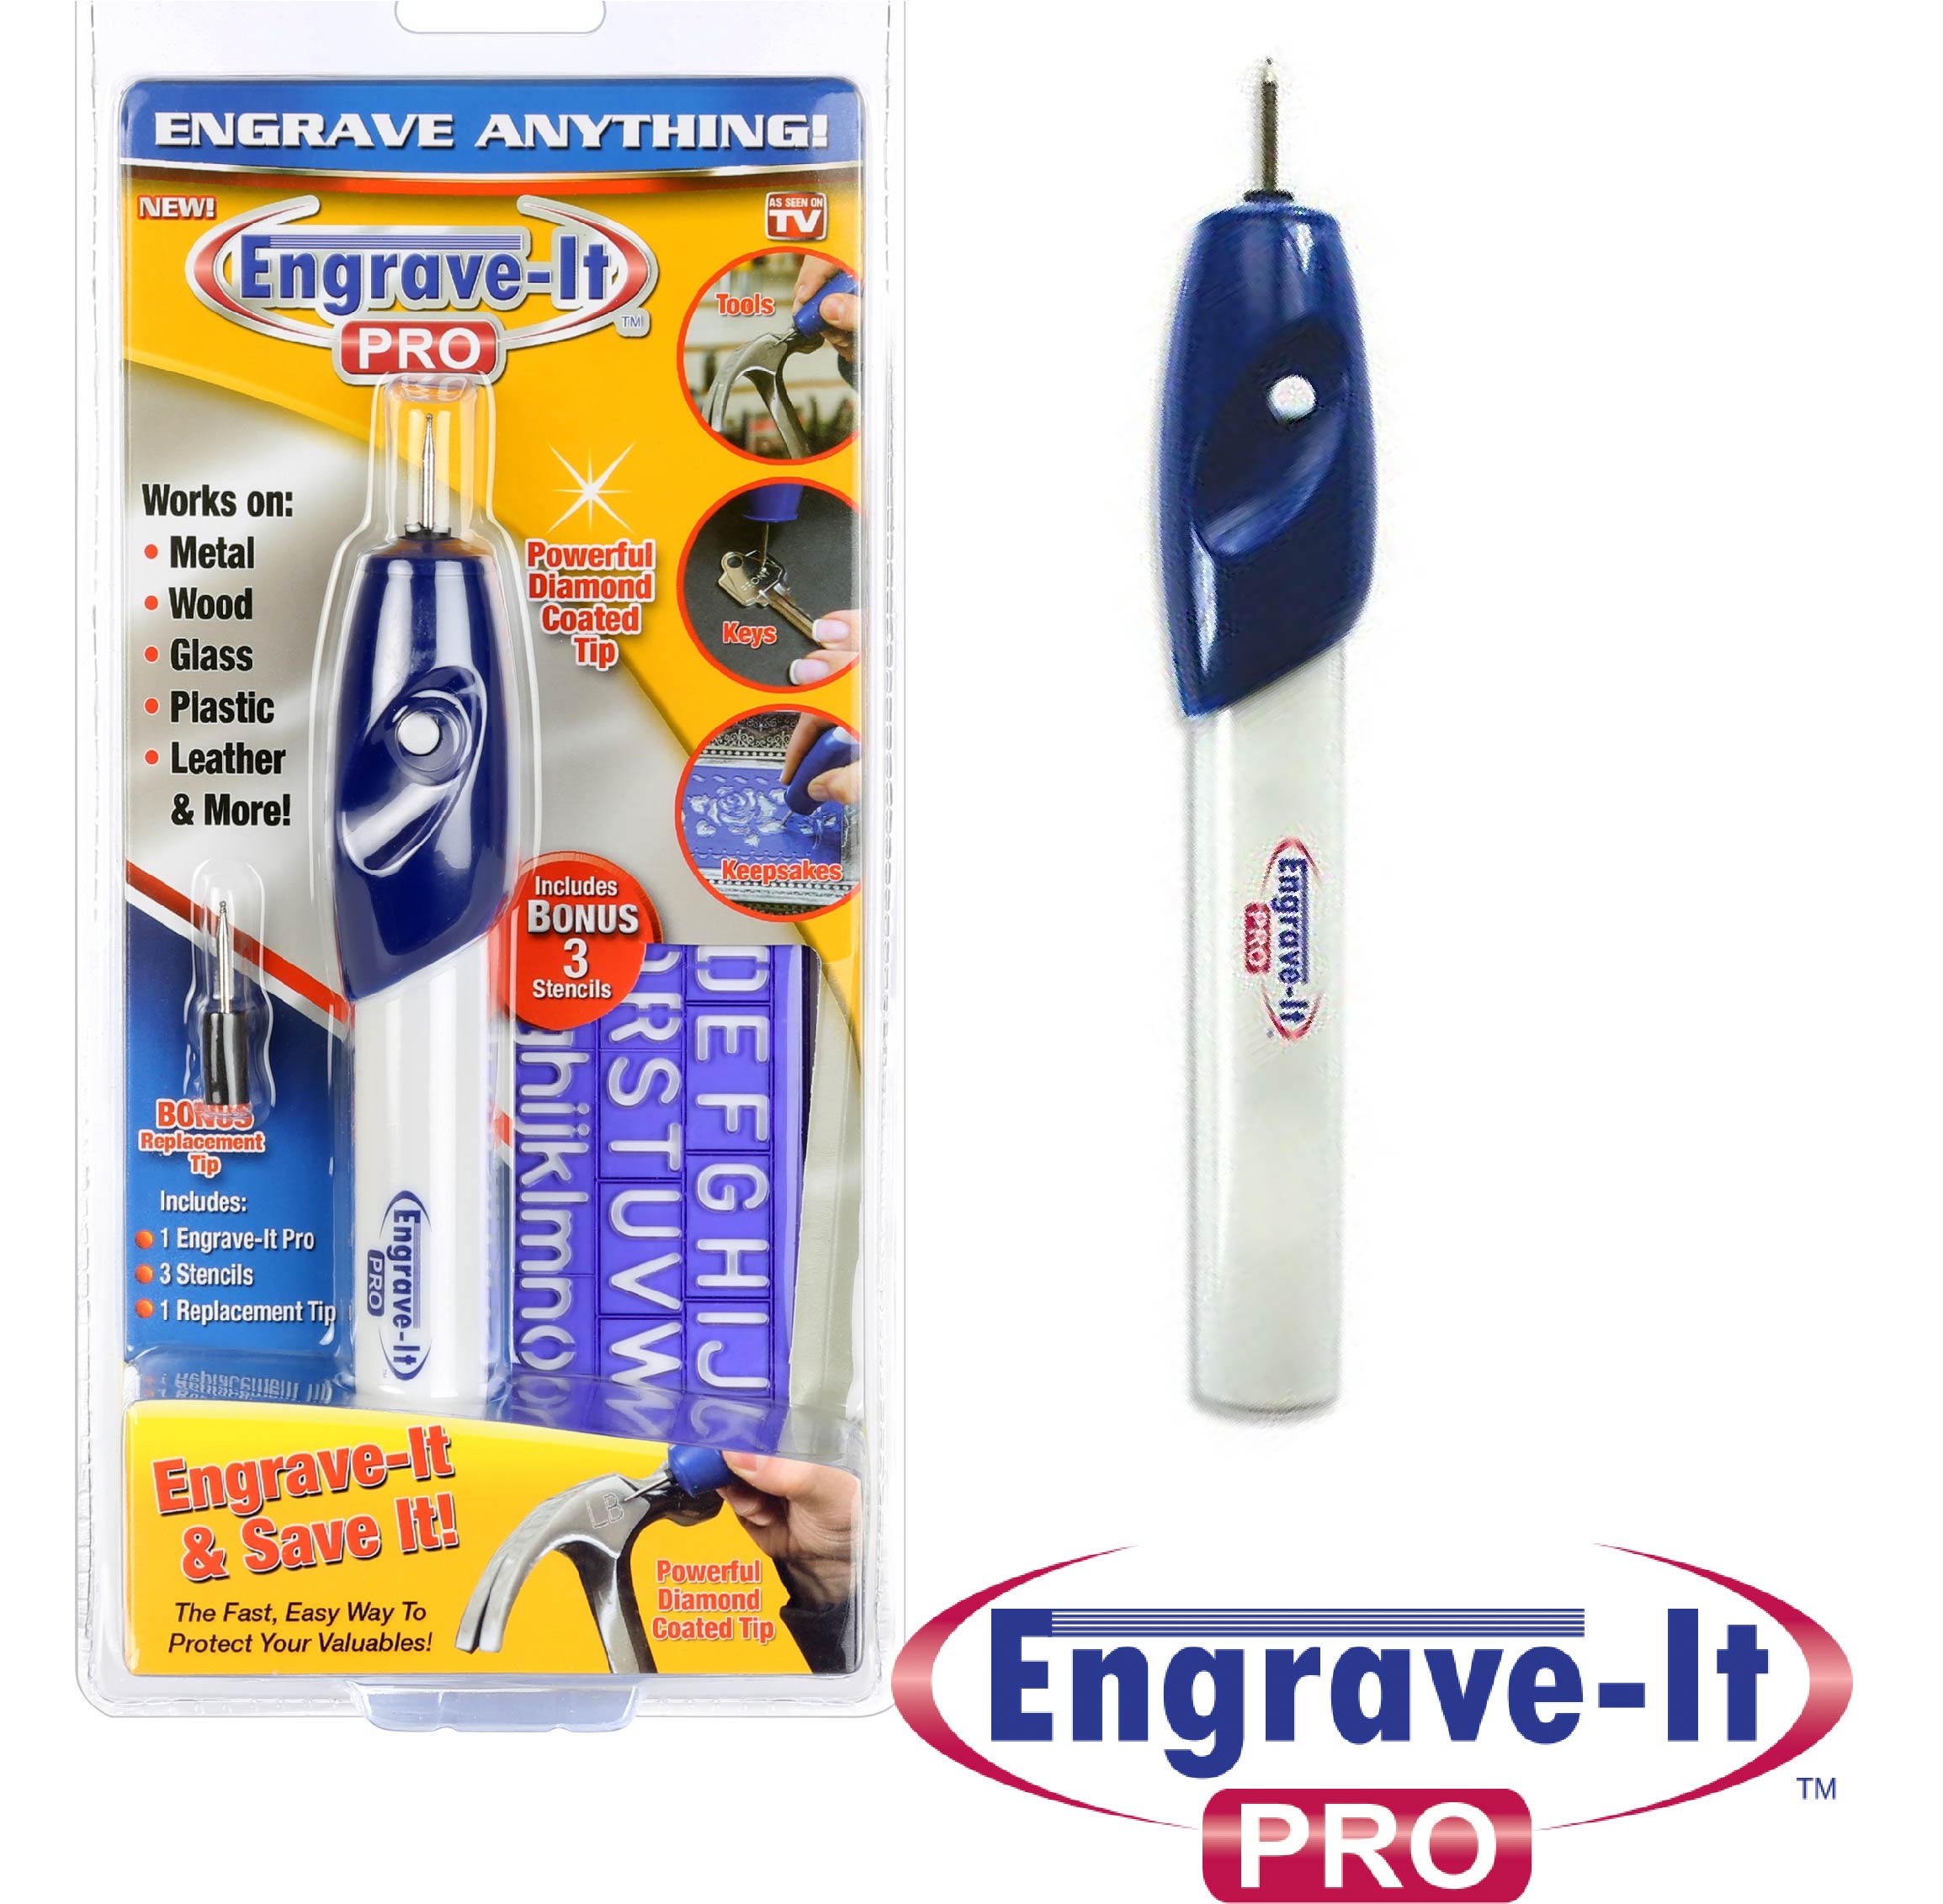 Engrave-it Pro